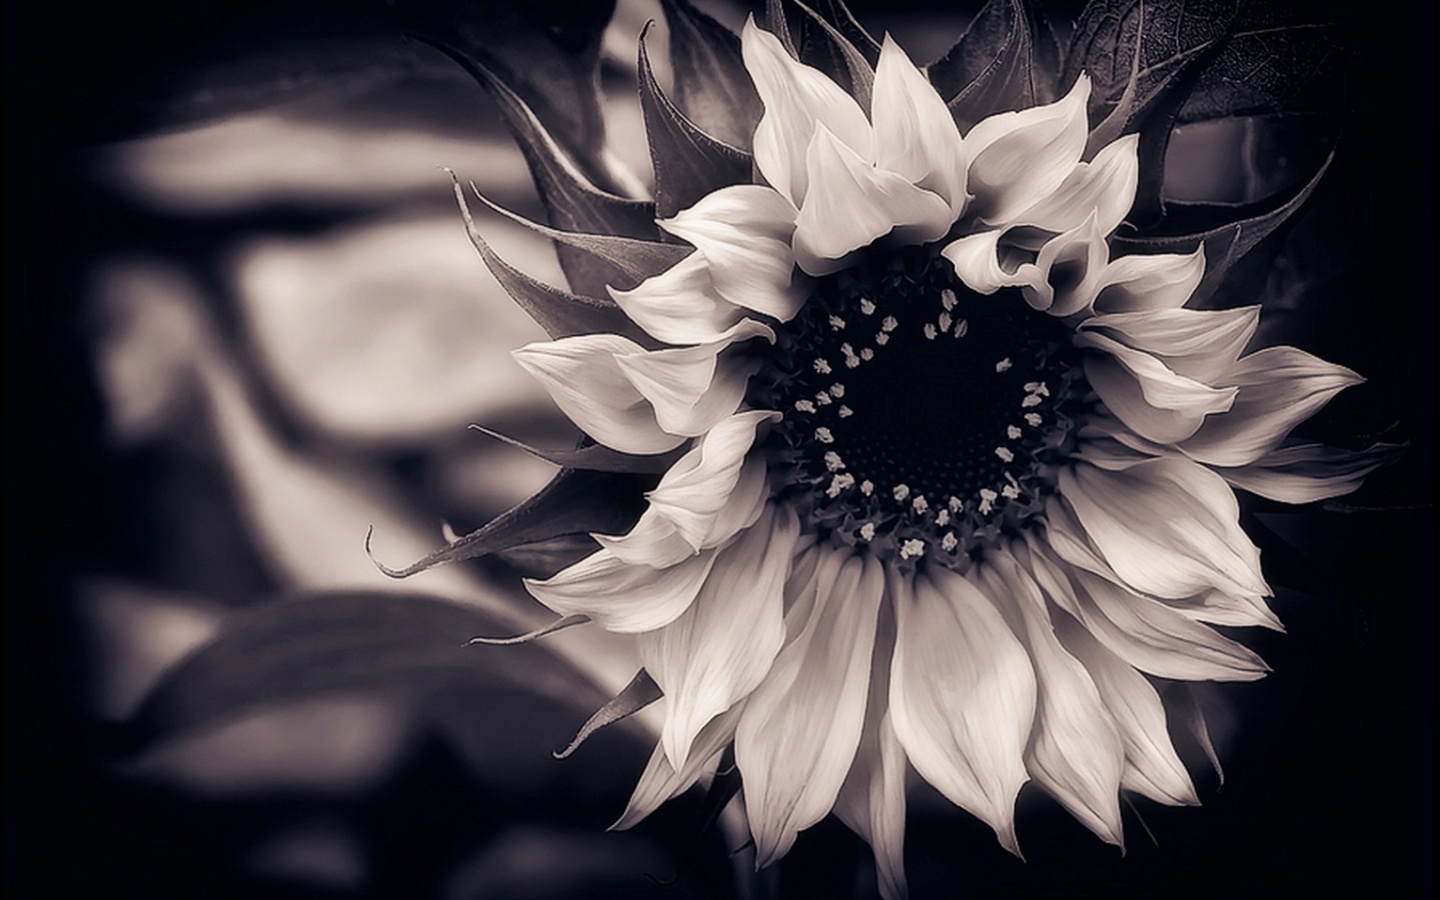 papier peint floral noir et blanc,photographie monochrome,blanc,noir et blanc,fleur,noir